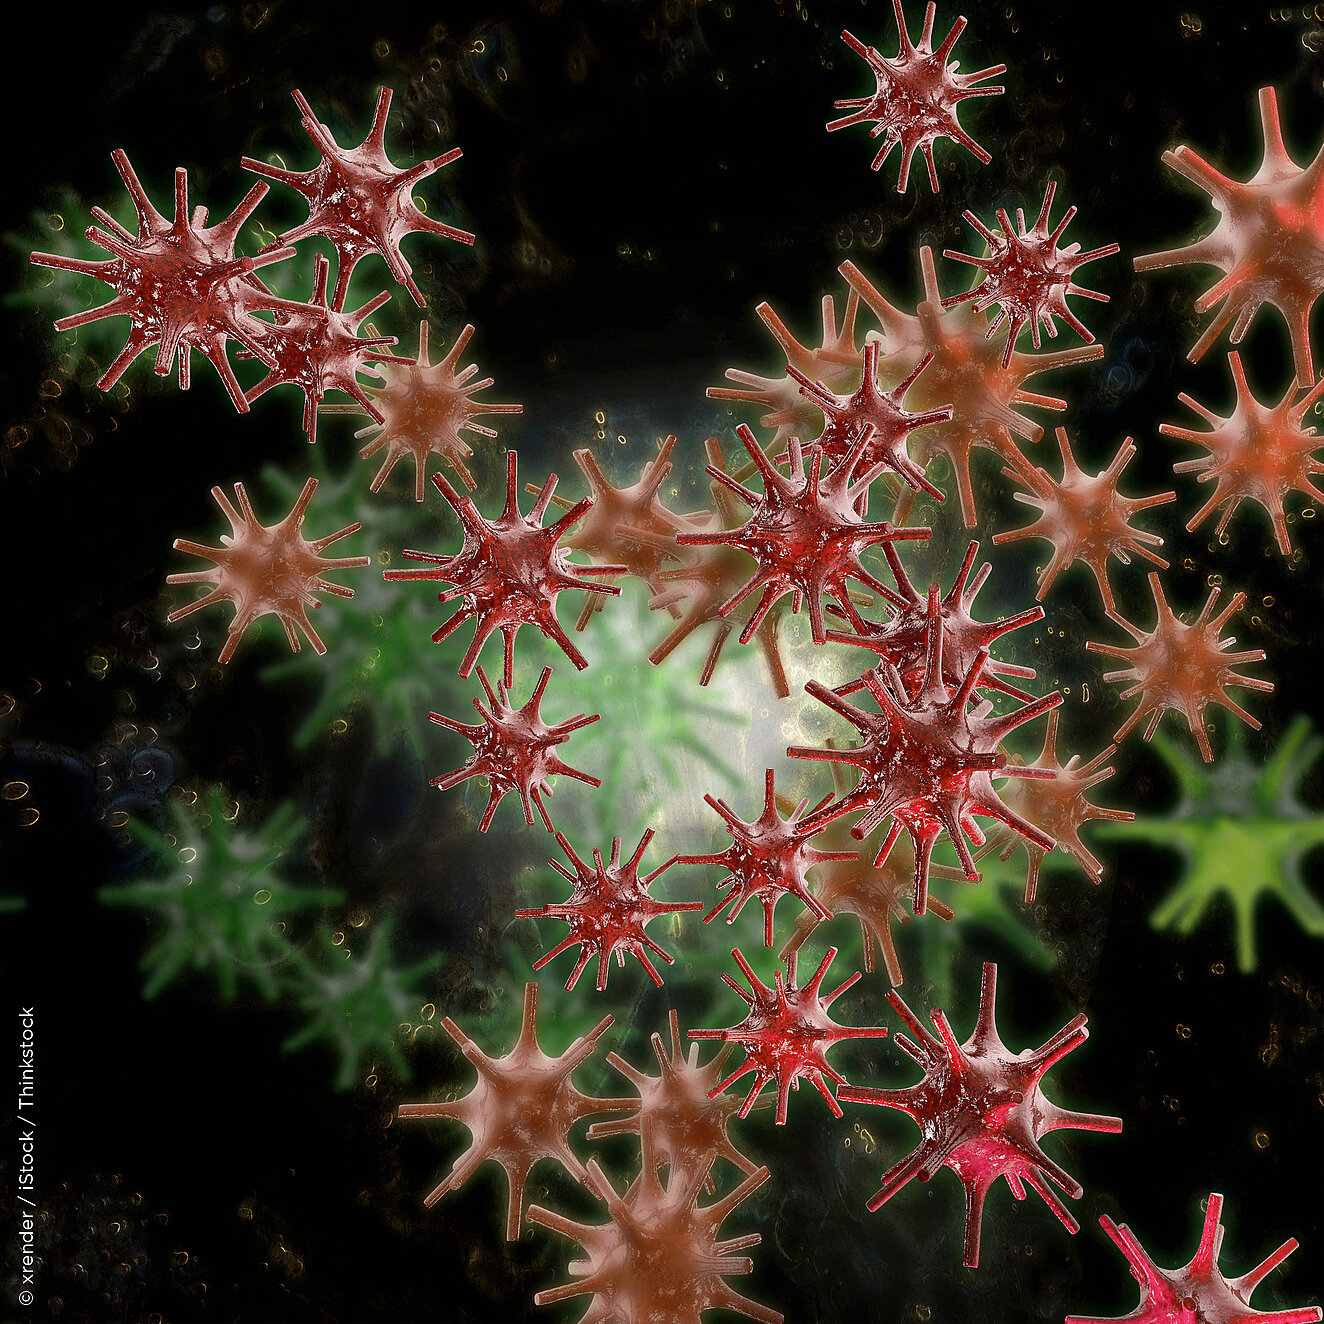 Herpes-Virus © xrender / iStock / Thinkstock